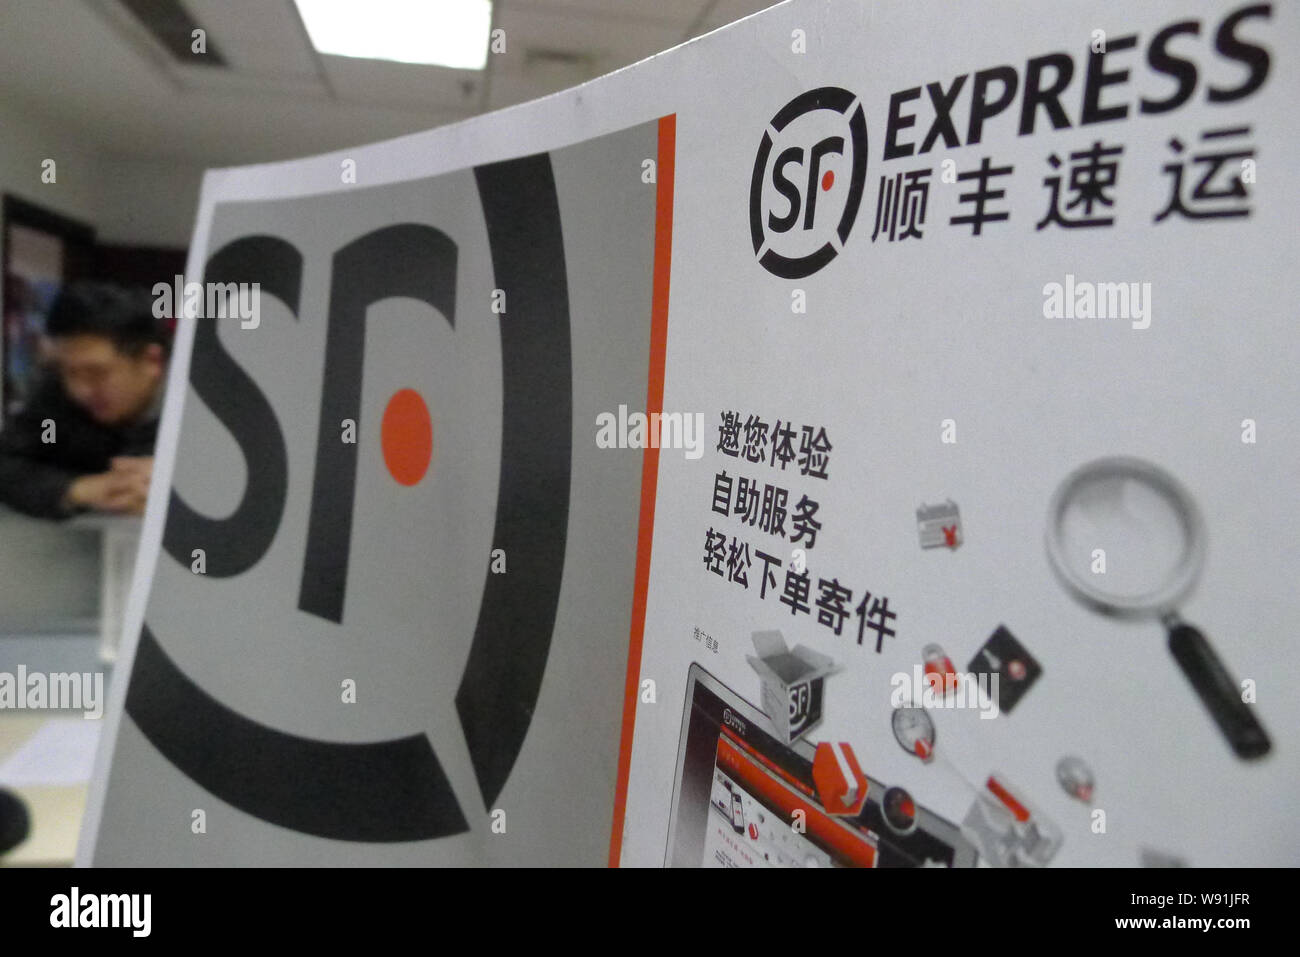 ---- Ein chinesischer Mitarbeiter Express Envelope in einer Filiale der SF Express in Qingdao Stadt, East China Provinz Shandong, den 2. Januar 2013. Chine Stockfoto